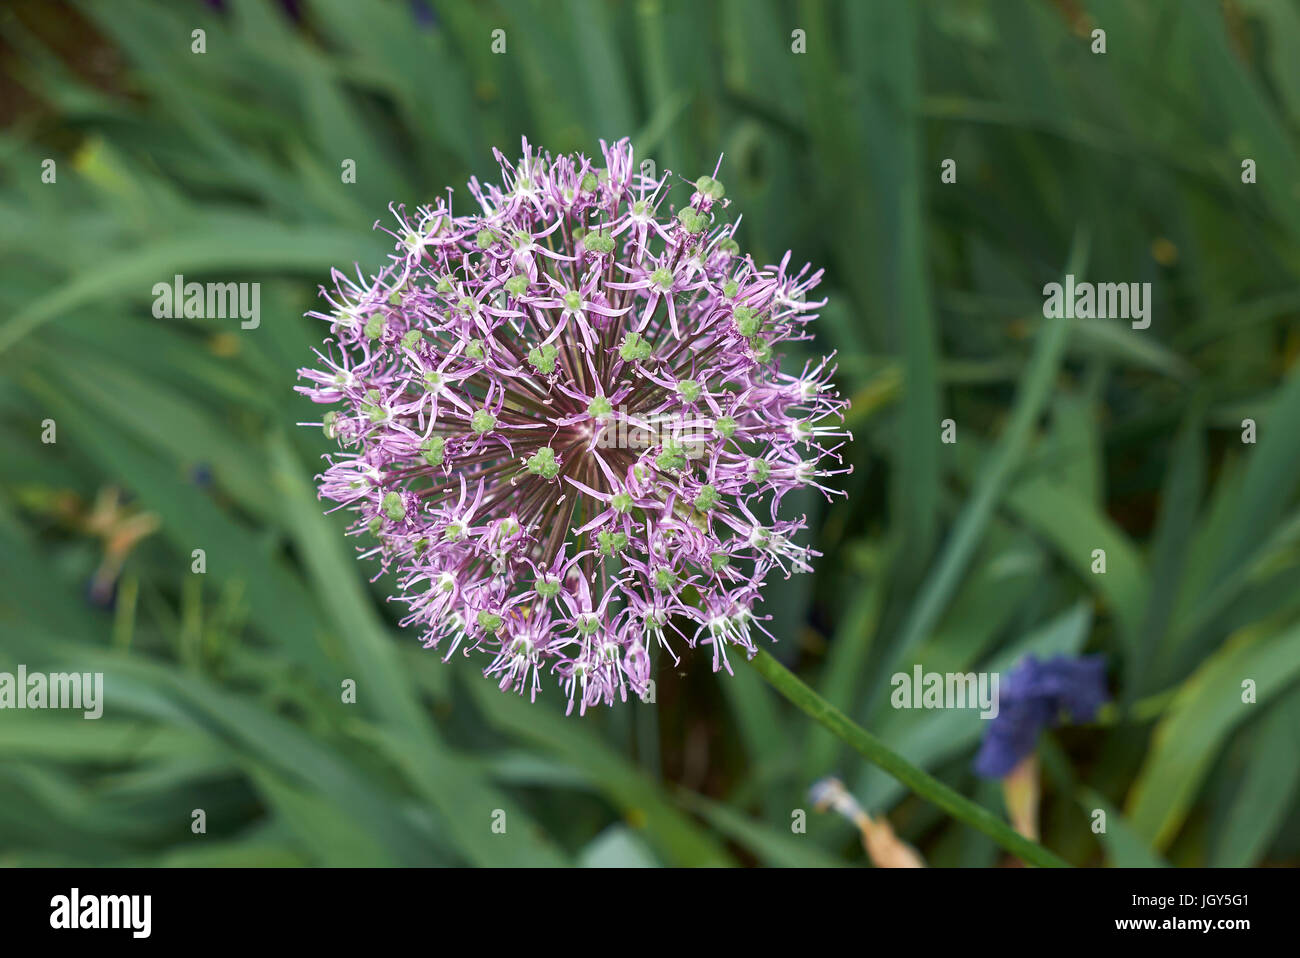 Allium giganteum flower Stock Photo